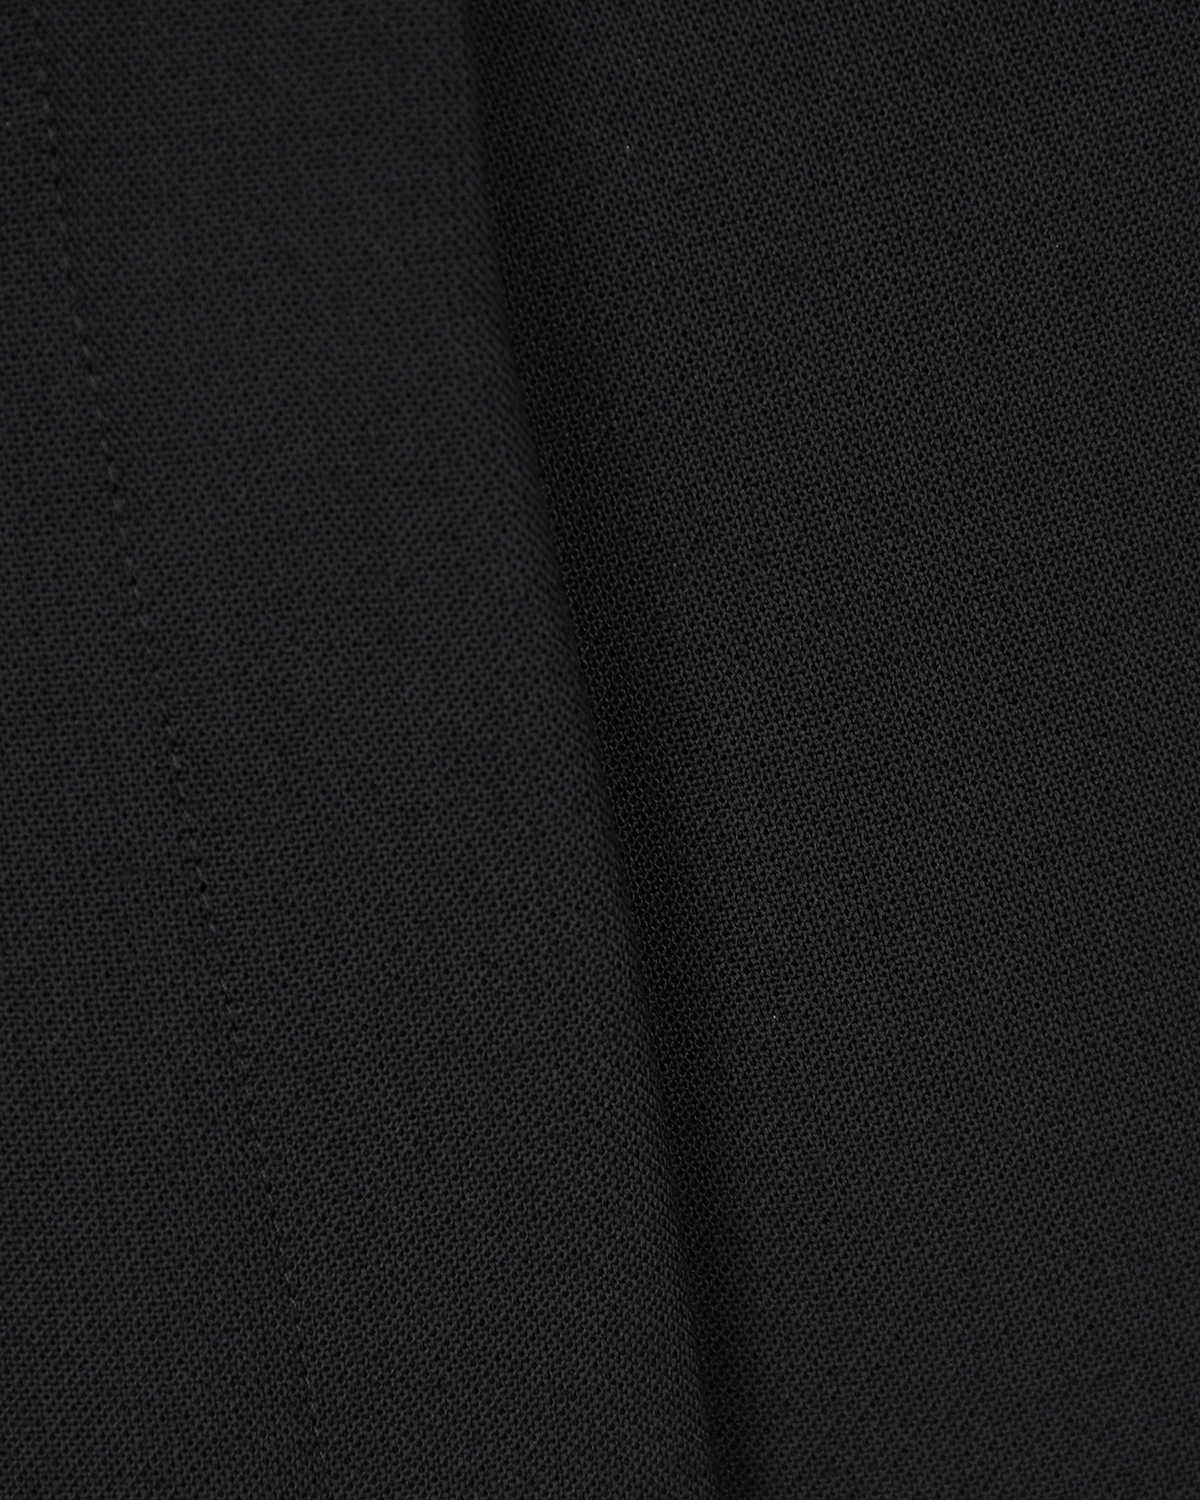 Зауженные черные брюки длиной 7/8 Dorothee Schumacher, размер 42, цвет черный Зауженные черные брюки длиной 7/8 Dorothee Schumacher - фото 7